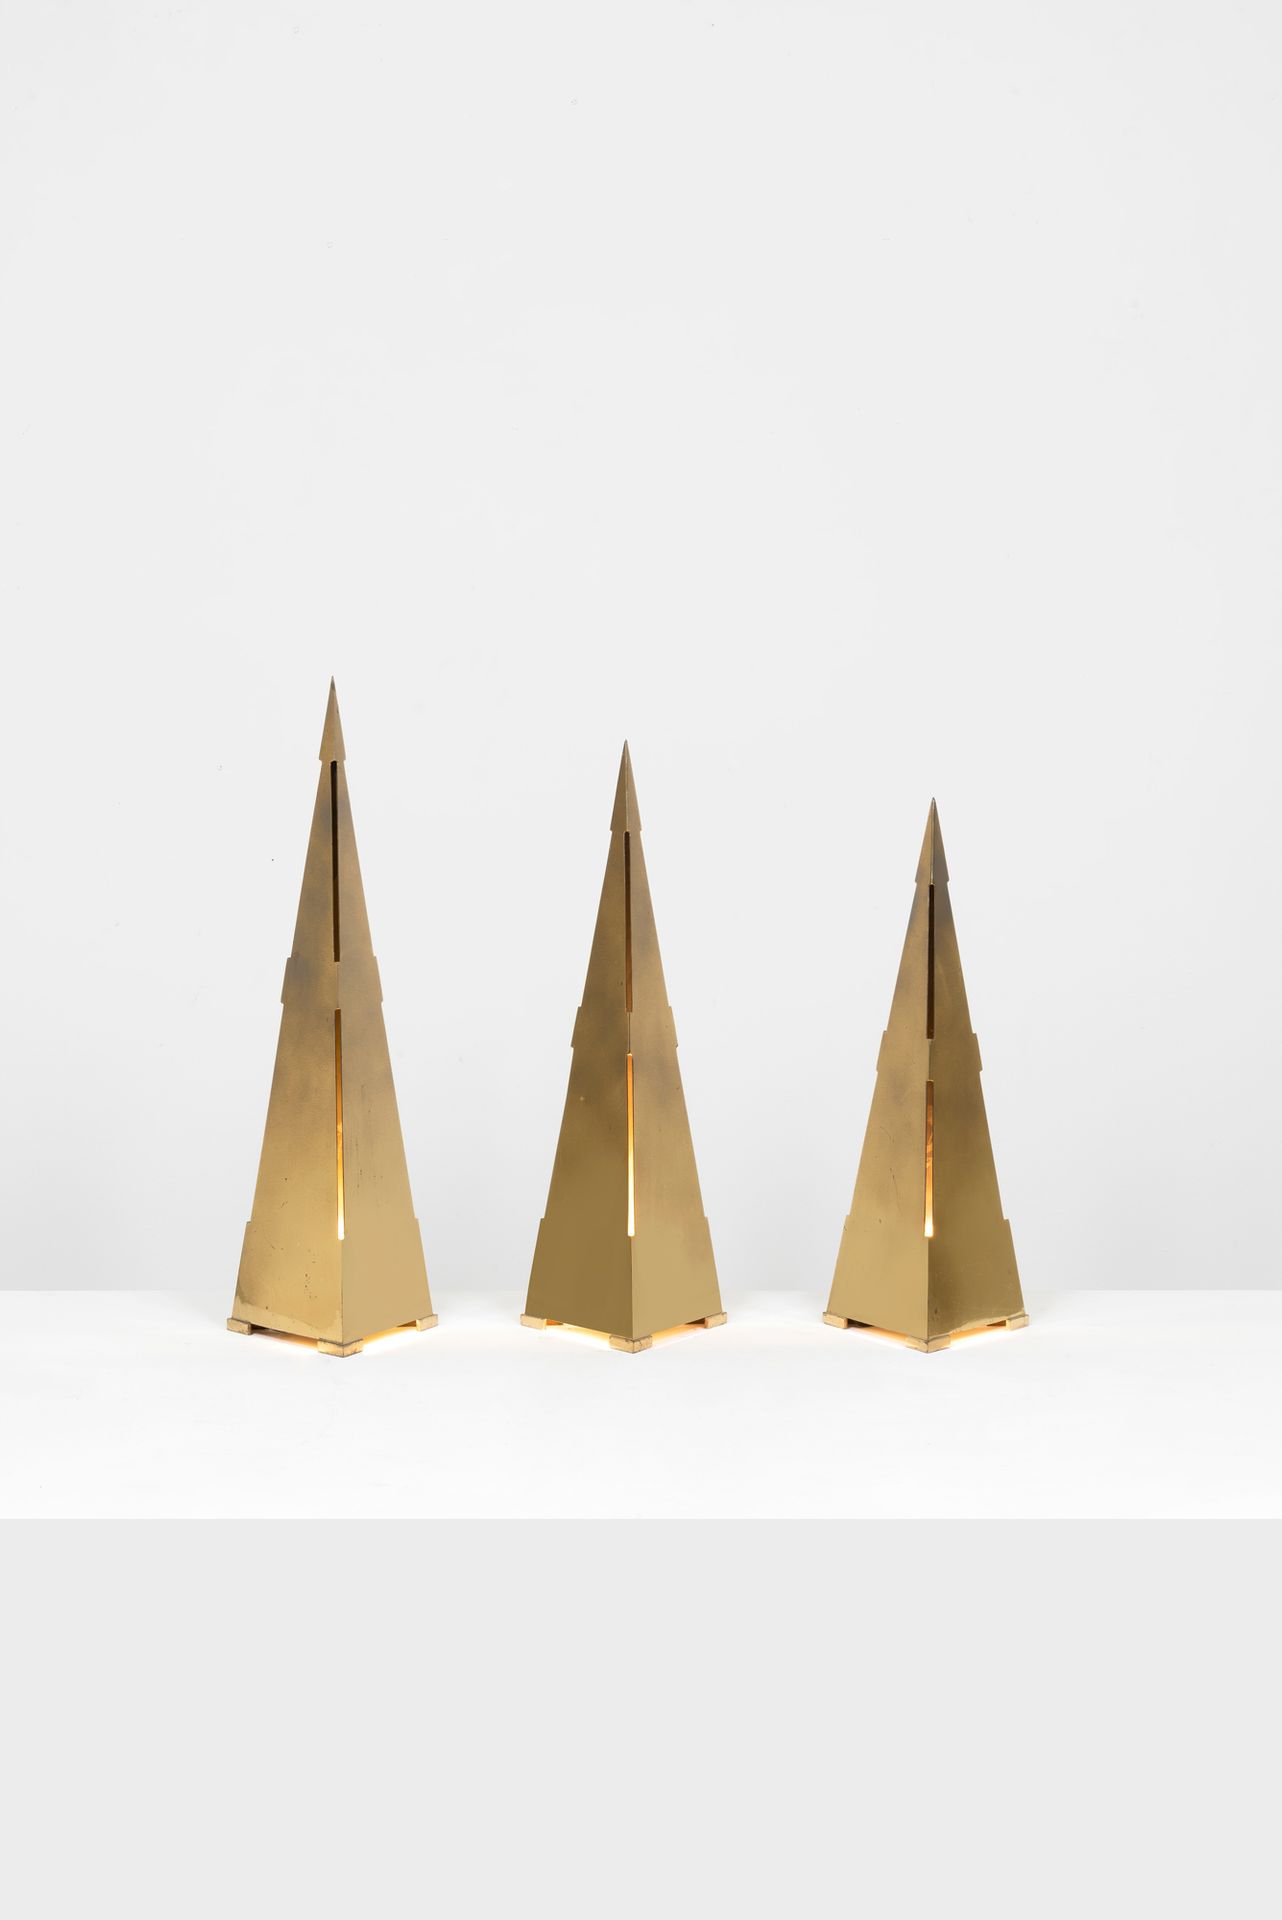 GABRIELLA CRESPI (1922-) AR 
Mod. Obelisco
Suite de trois lampes à poser
Laiton &hellip;